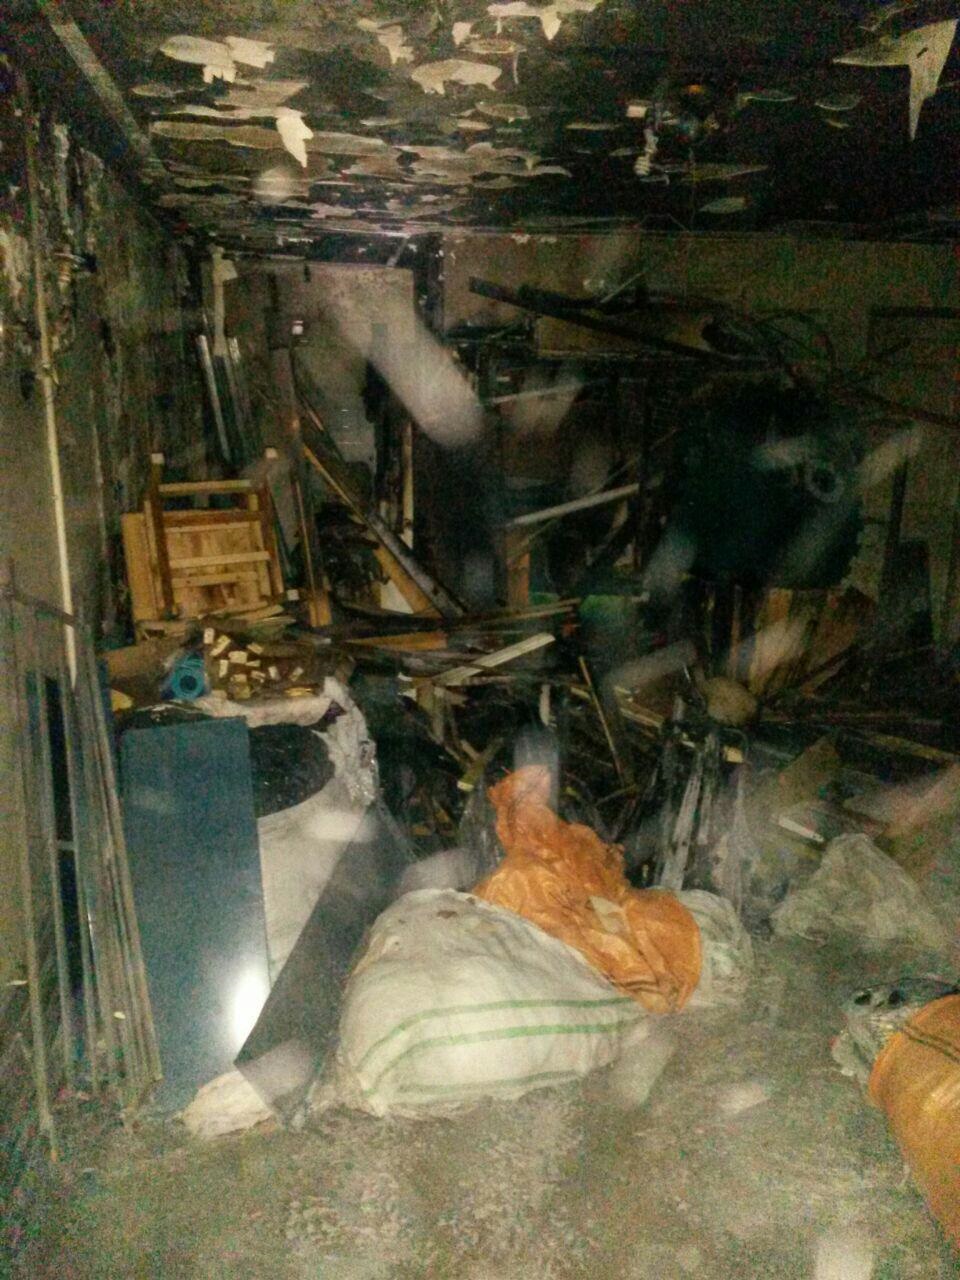 نشت گاز در یک محل گودبرداری و وقوع انفجار در یک ساختمان مسکونی خیابان دربند